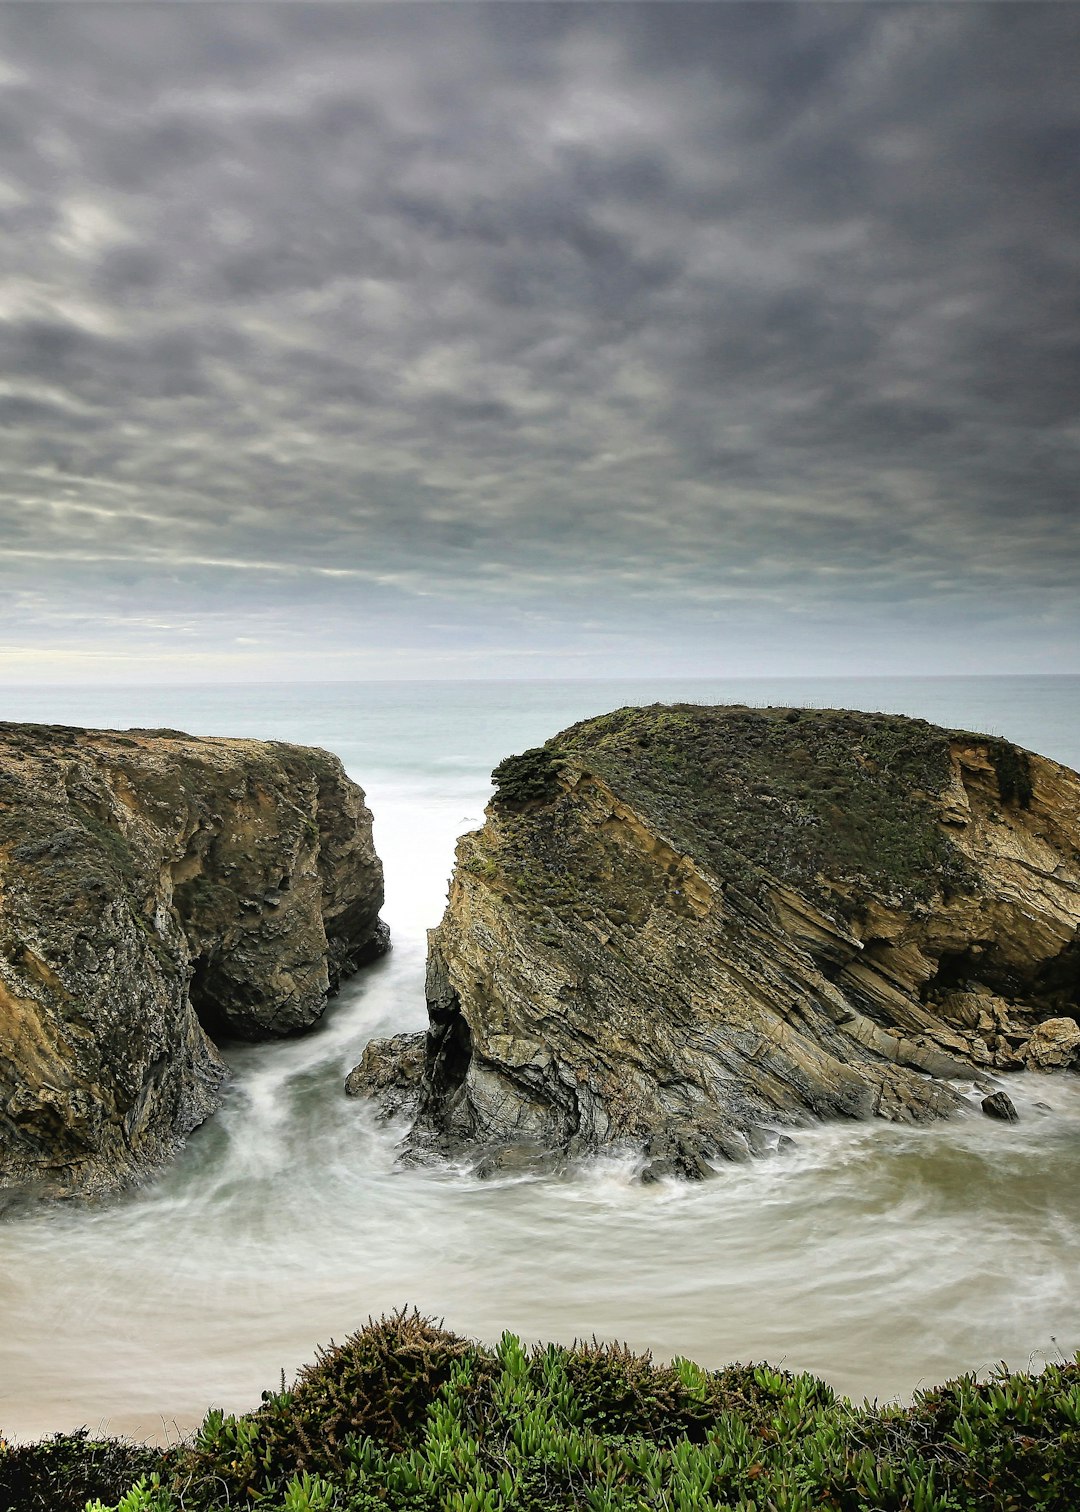 Coast photo spot Parque Natural do Sudoeste Alentejano e Costa Vicentina Algarve